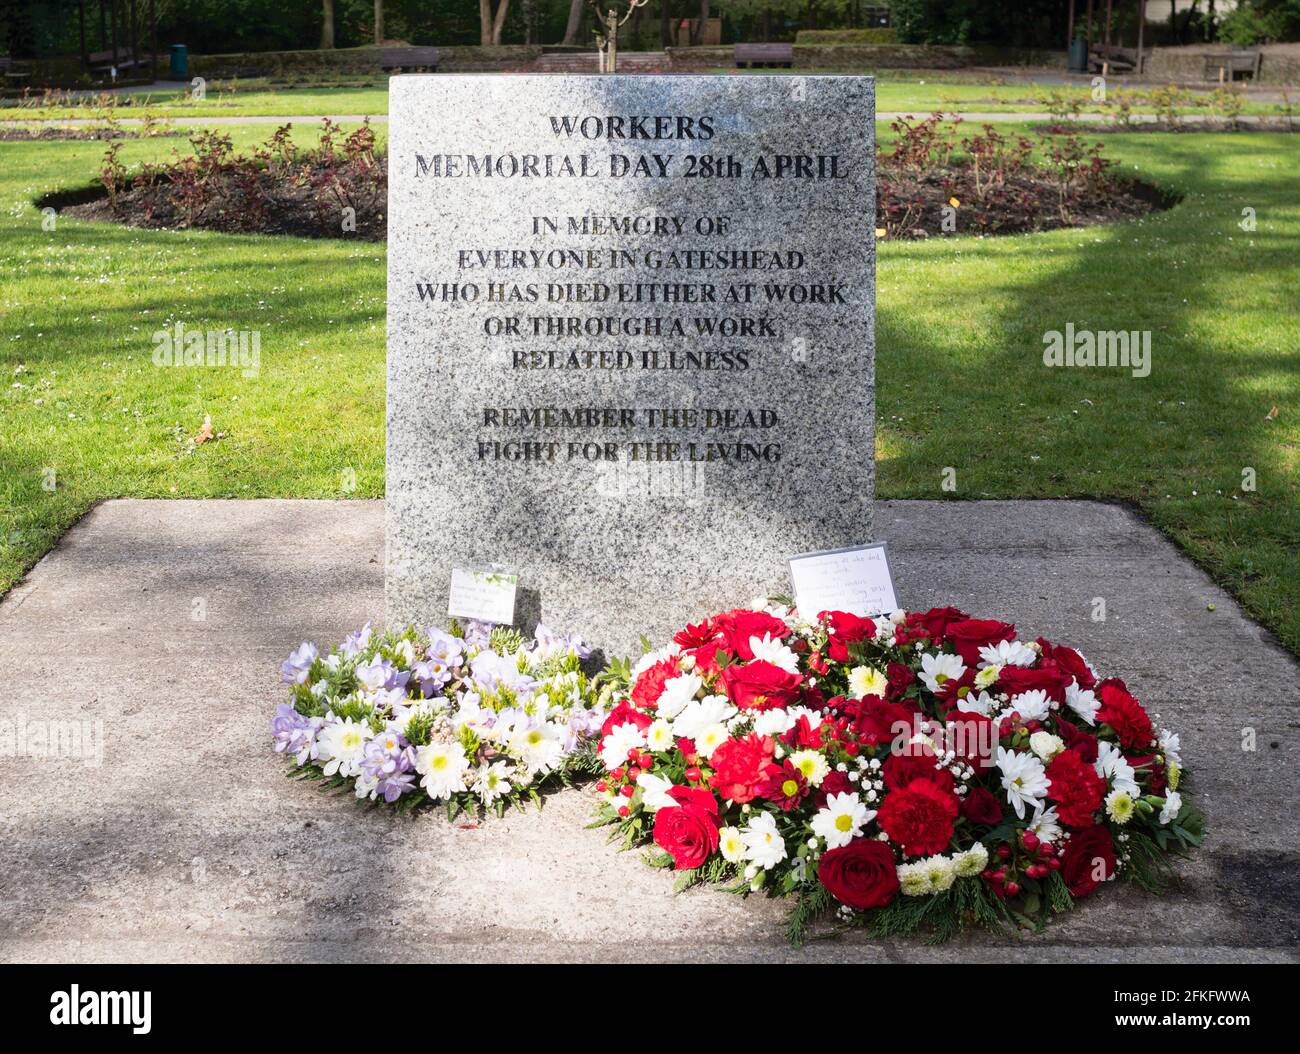 Piedra memorial de los trabajadores 28th de abril en Saltwell Park, Gateshead, noreste de Inglaterra, Reino Unido Foto de stock